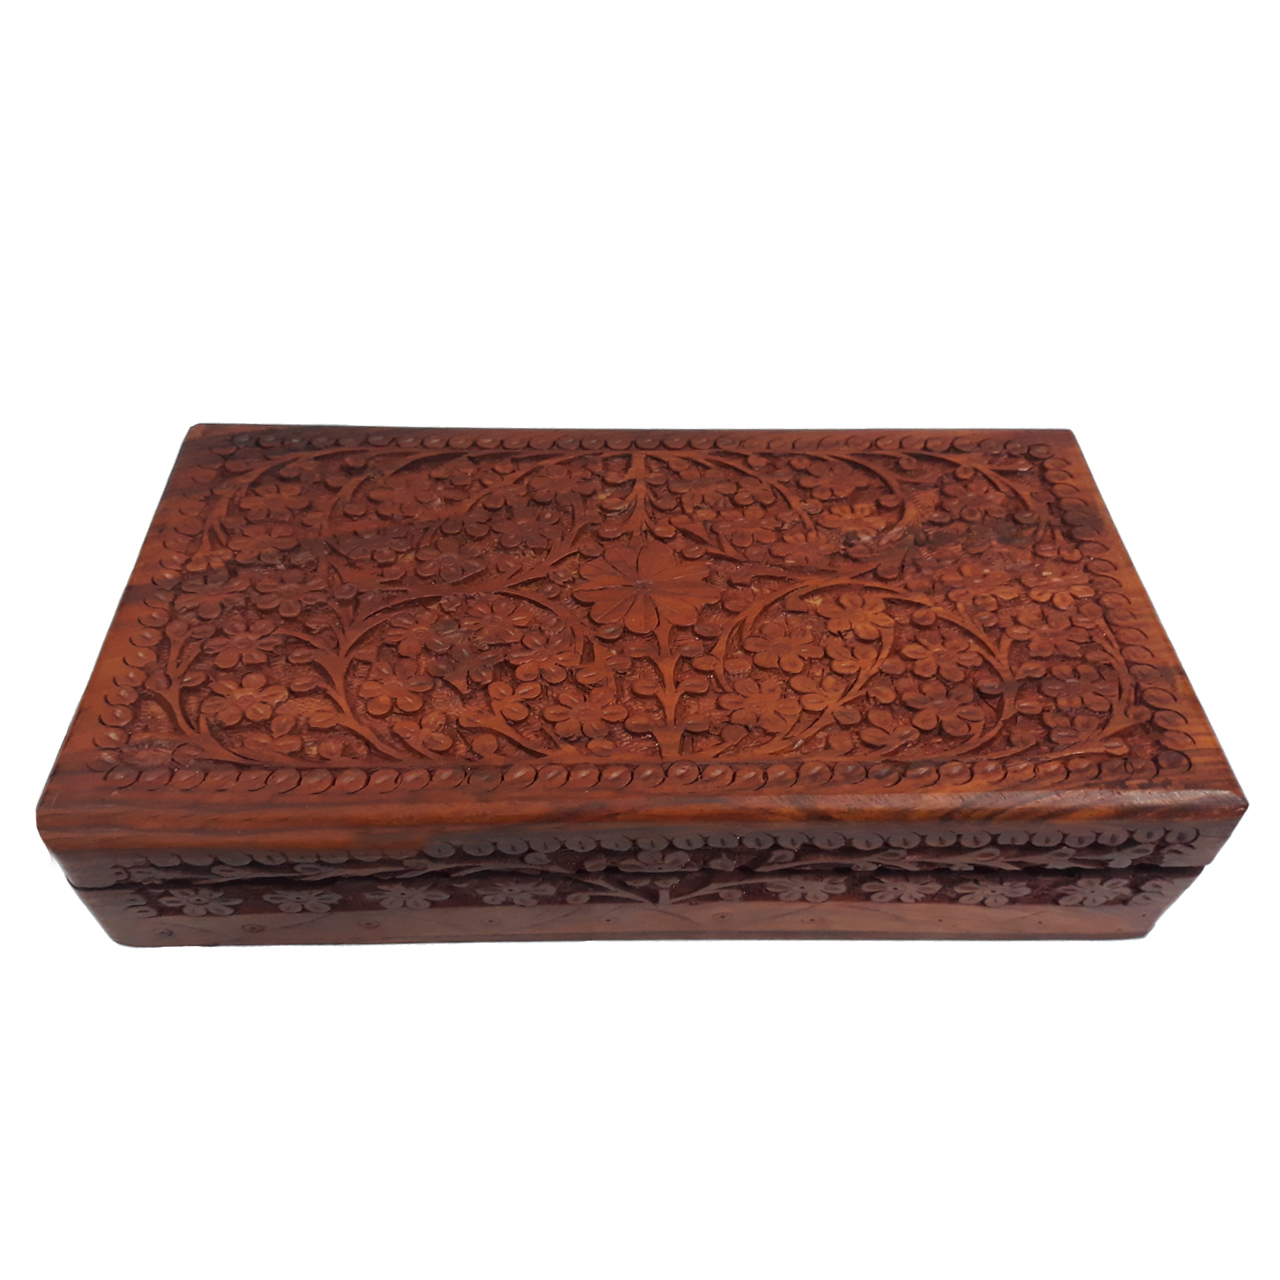 جعبه چوبی منبت کاری هندی مدل 1014-K